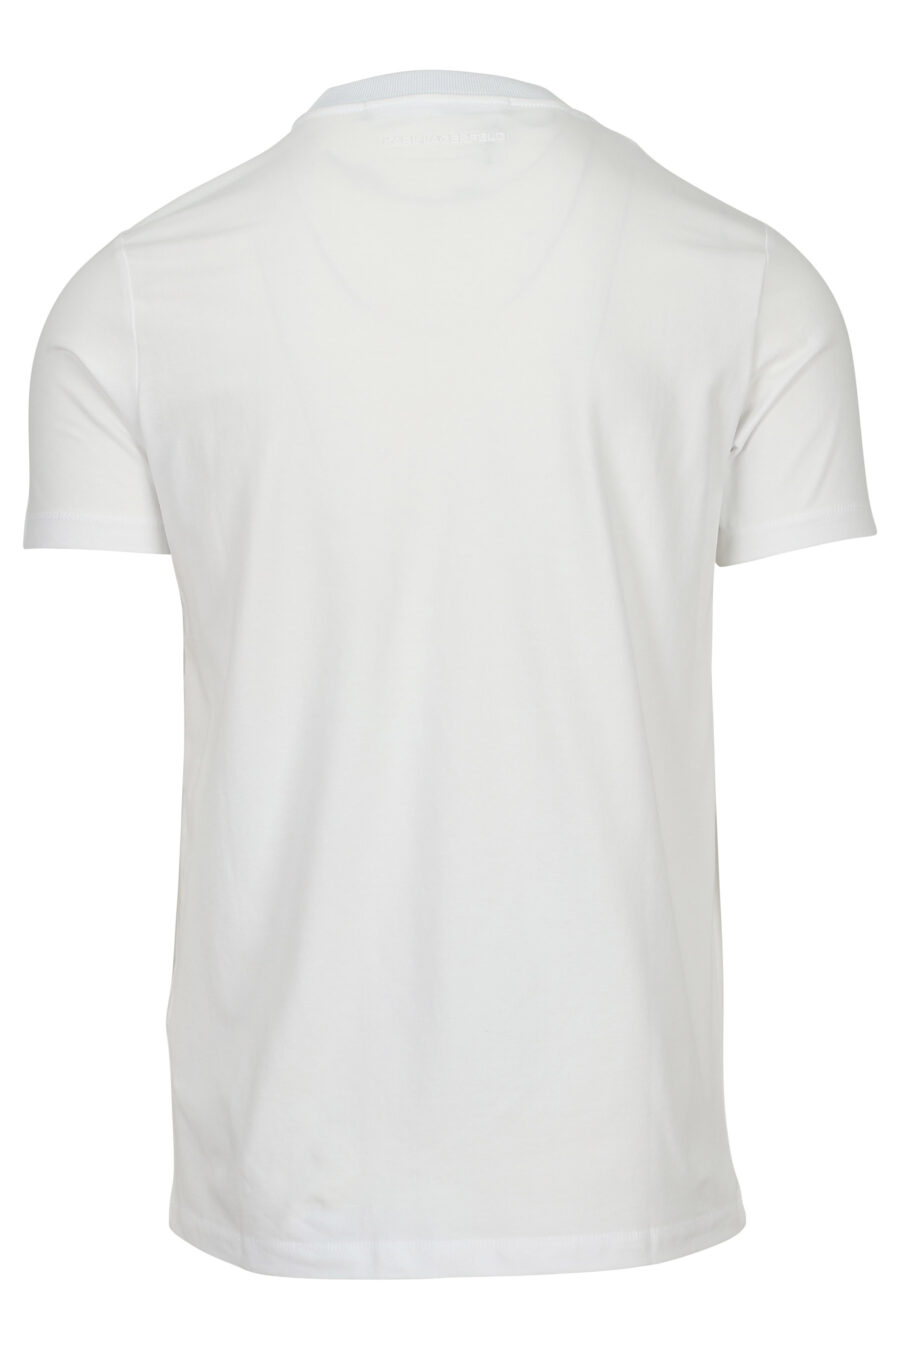 Camiseta blanca con maxilogo firma - 4062226789196 1